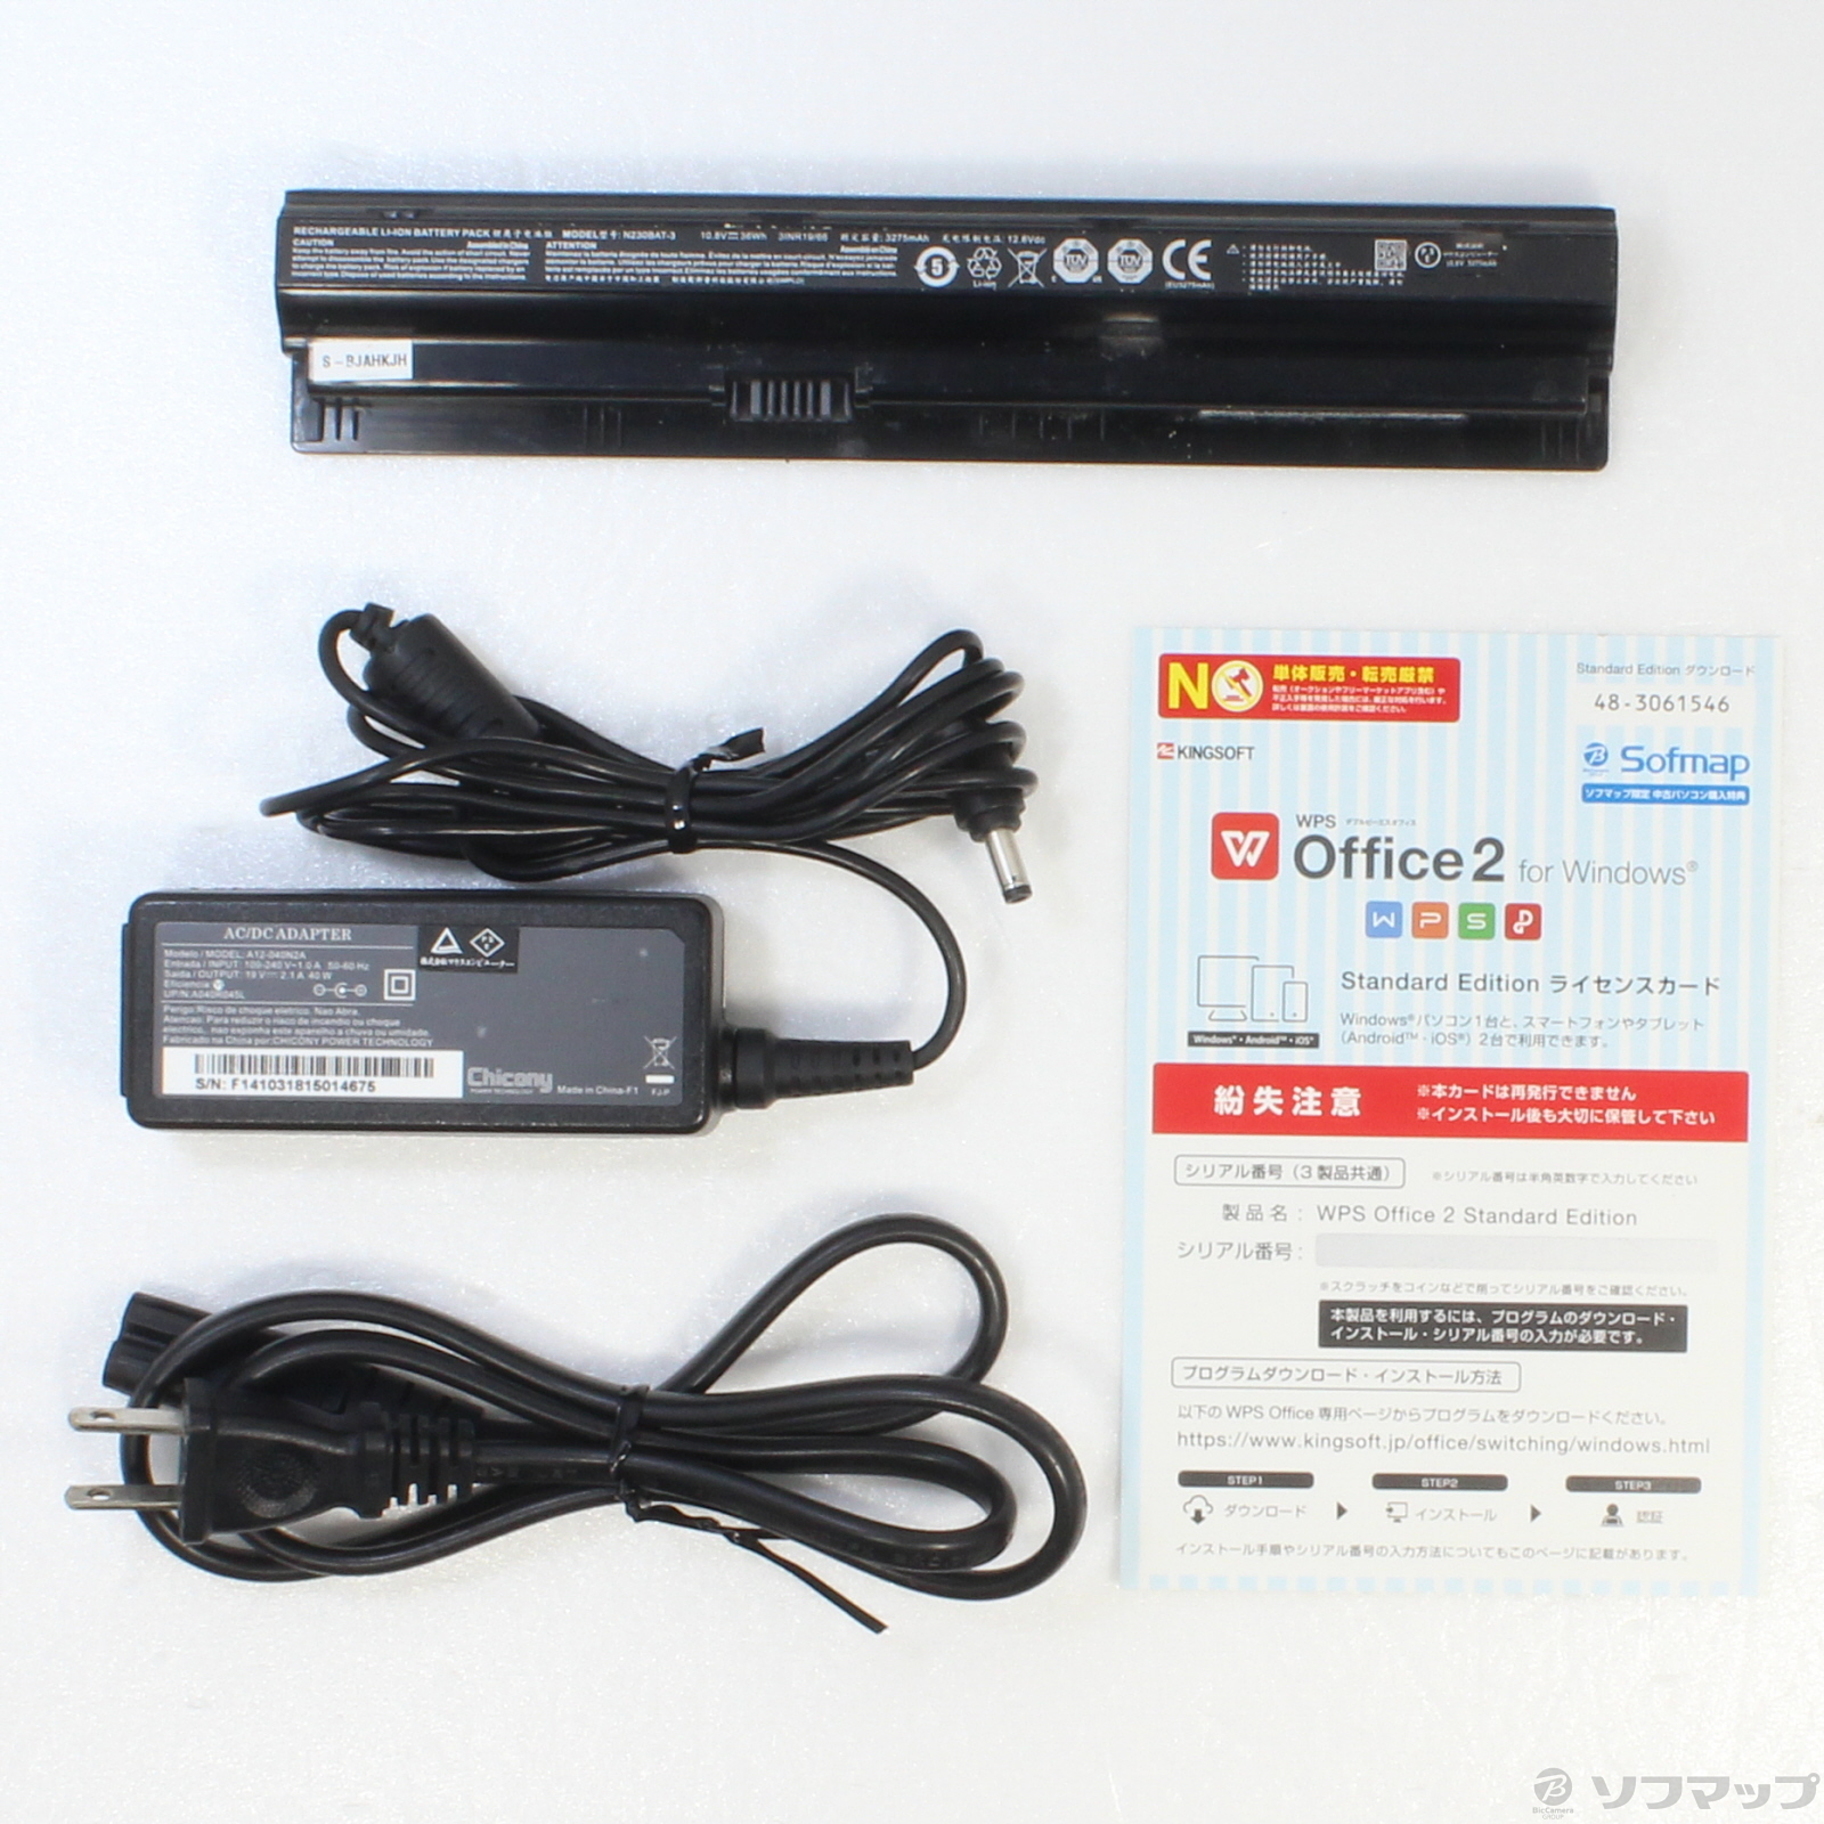 マウス MPro-NB390 Ci5 FHD SSD搭載 Webカメラ付き3